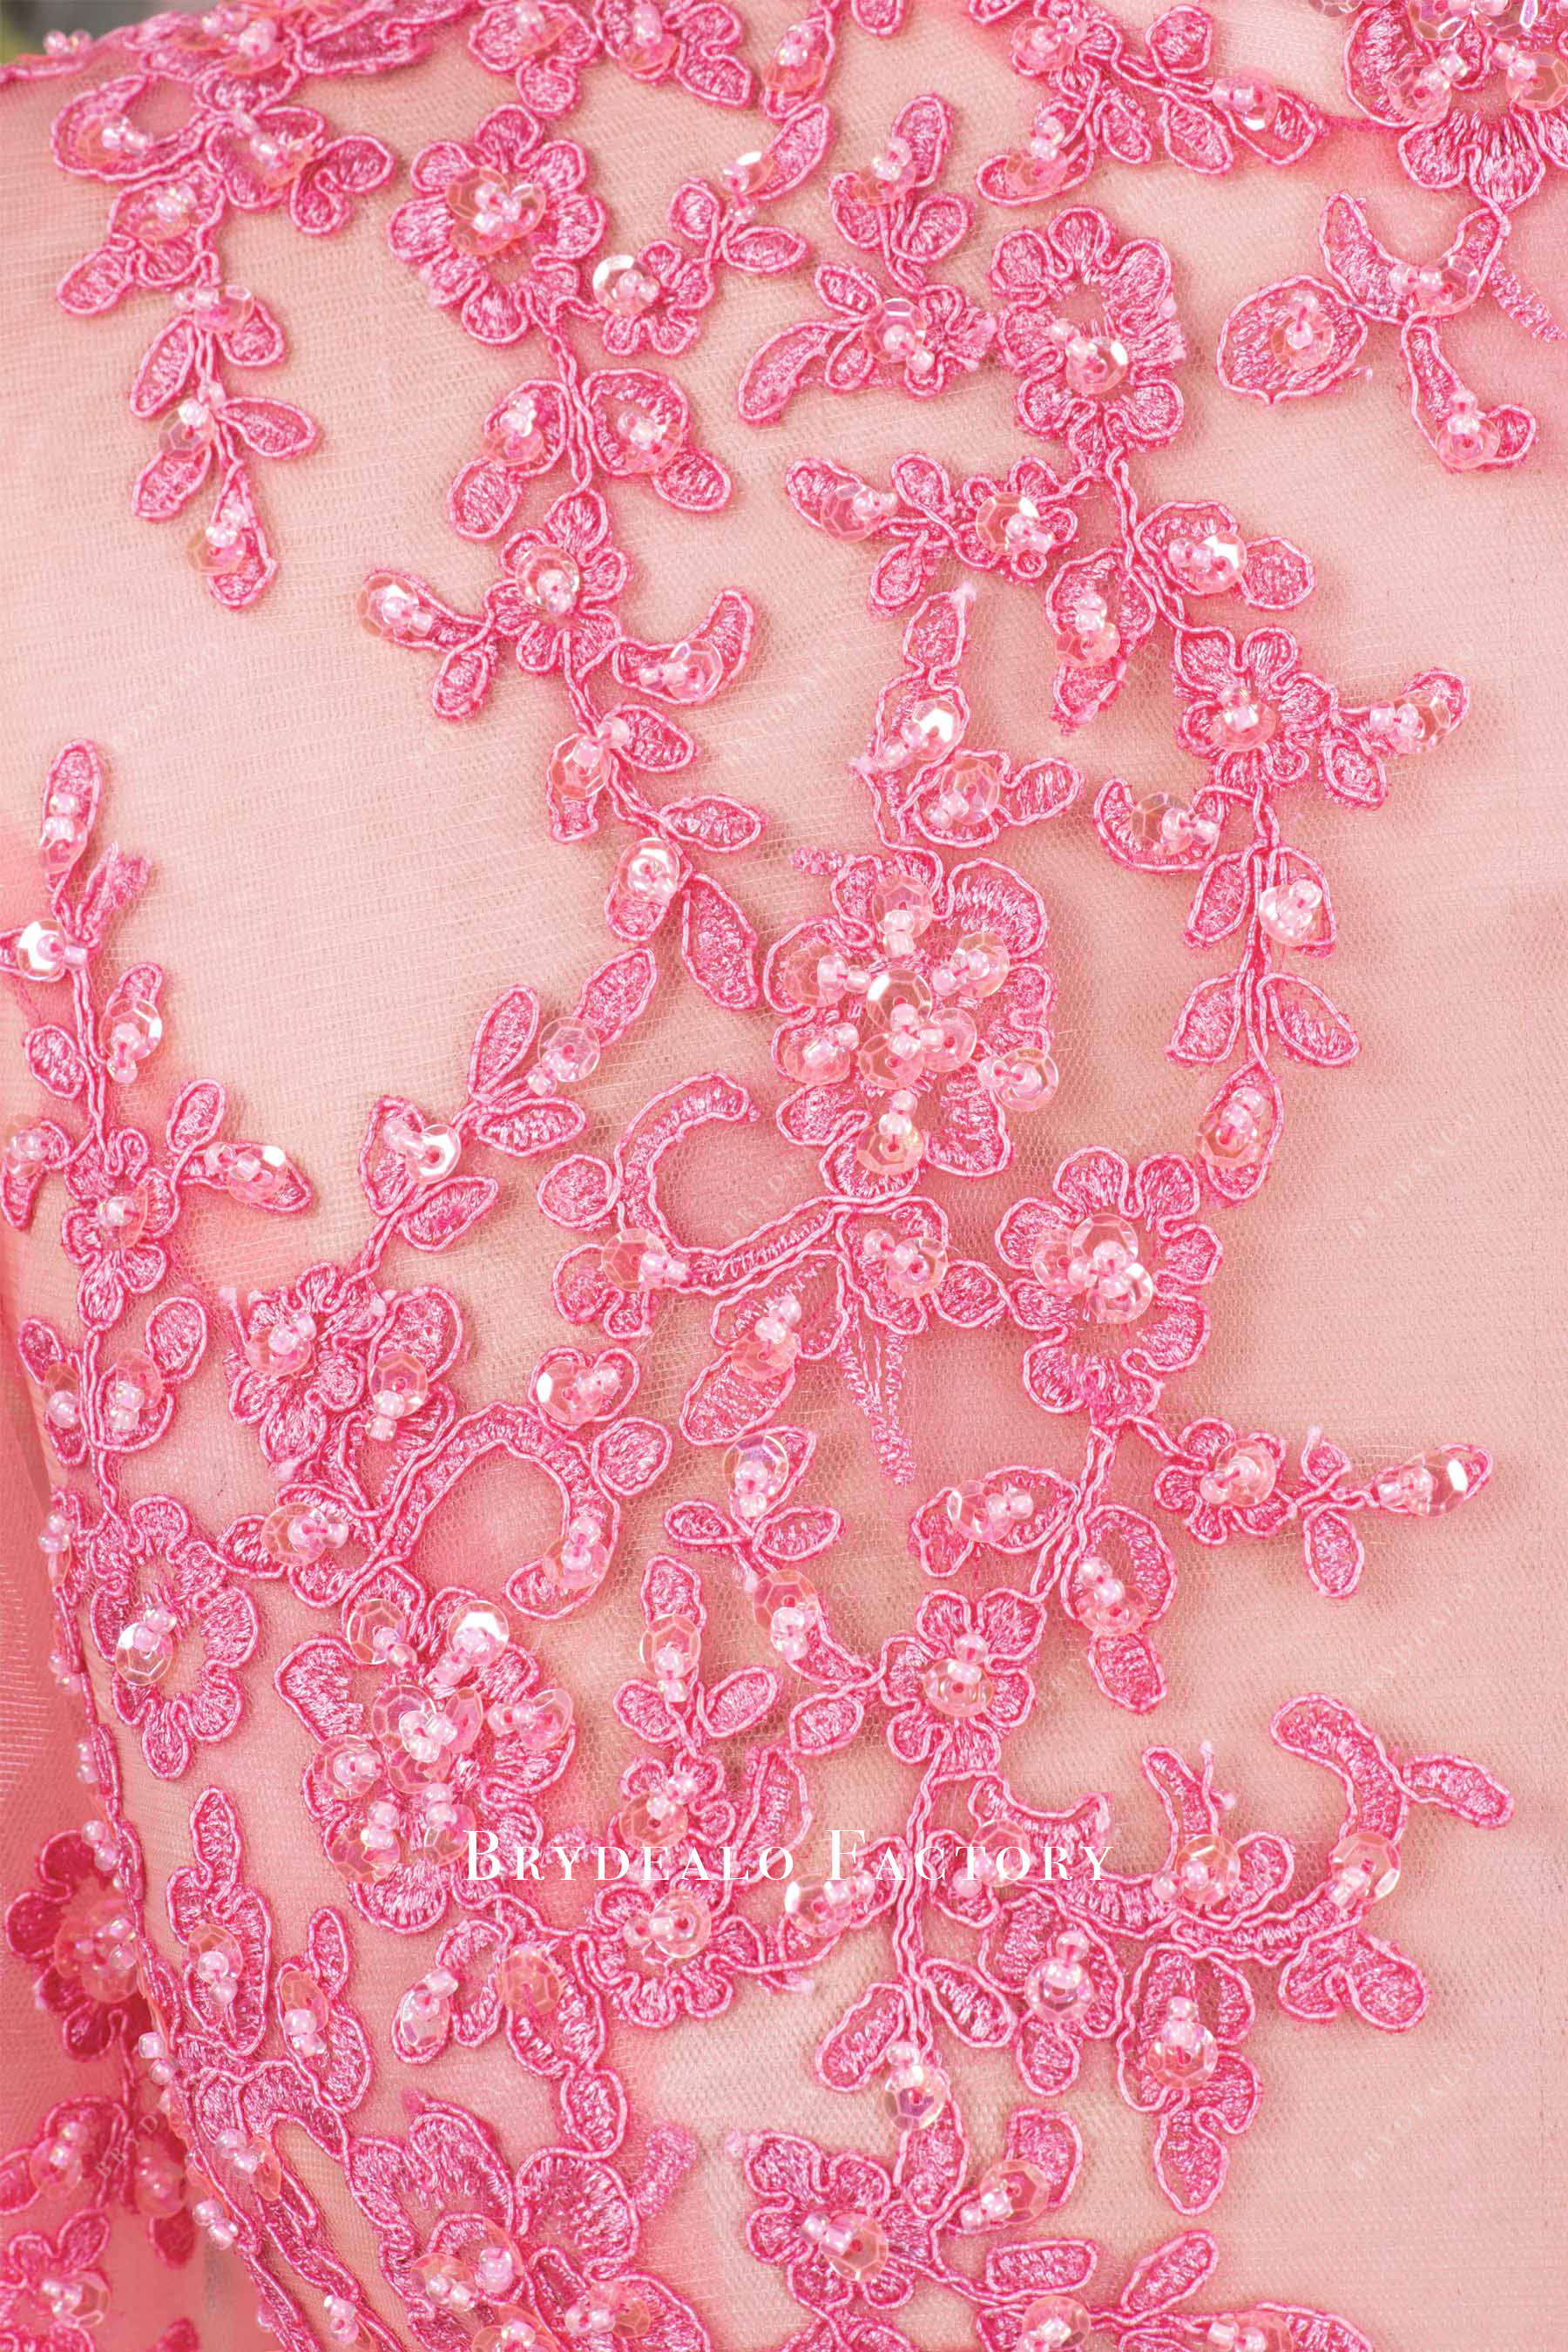 hand-sewn beading pink lace dress